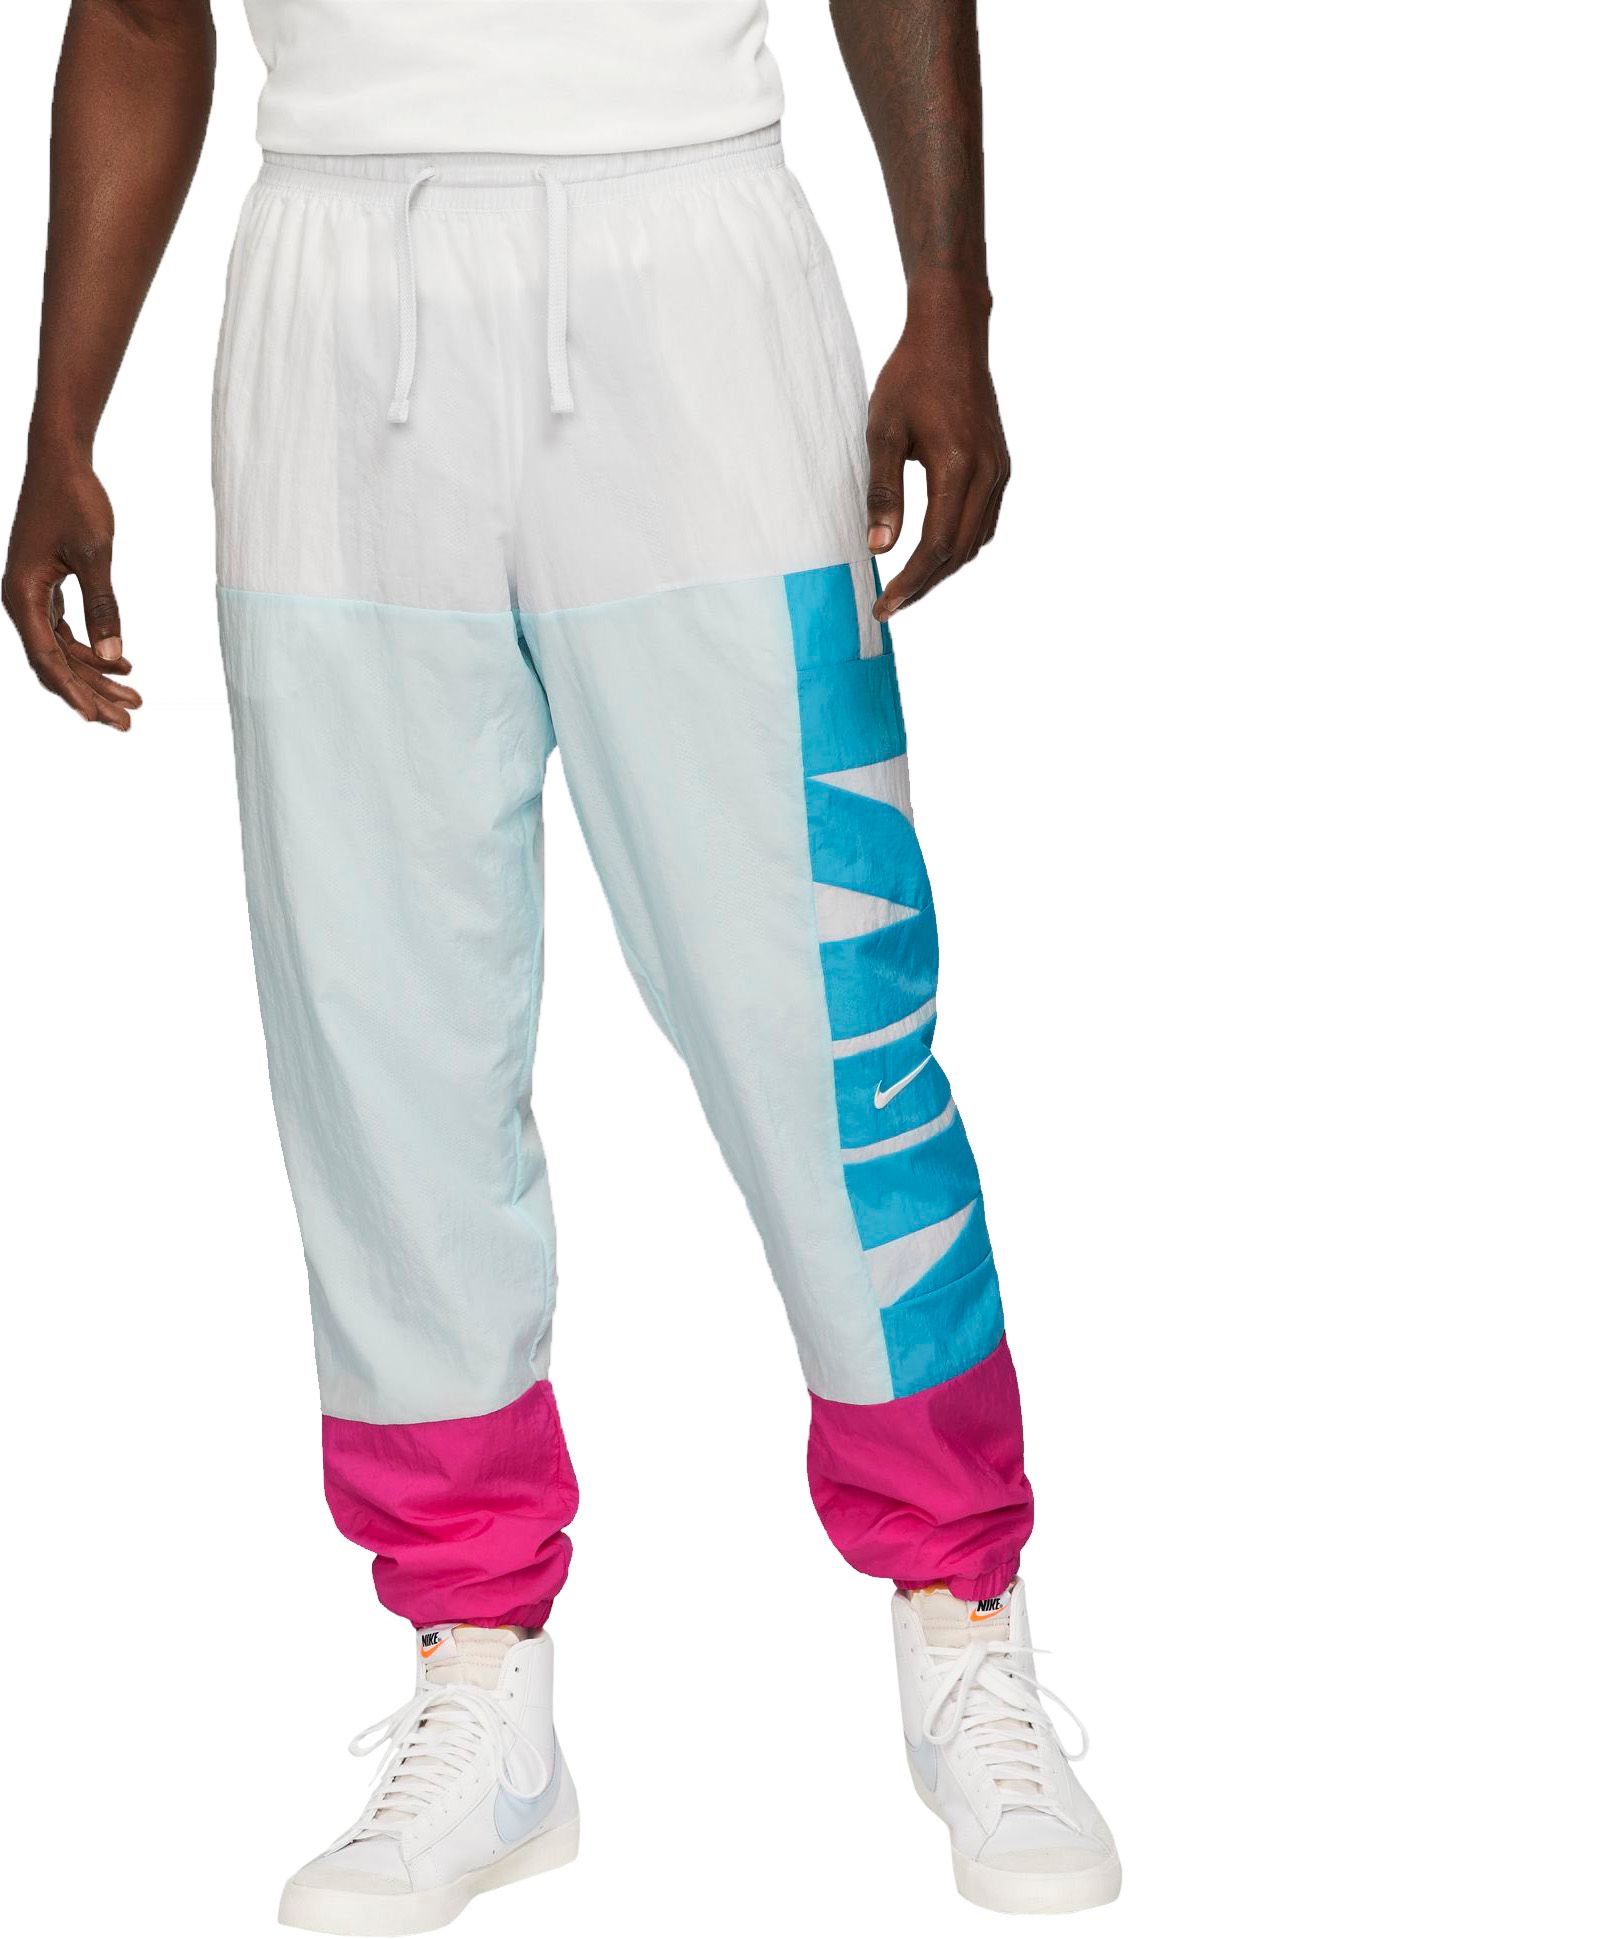 Nike / Men's Starting 5 Basketball Pants